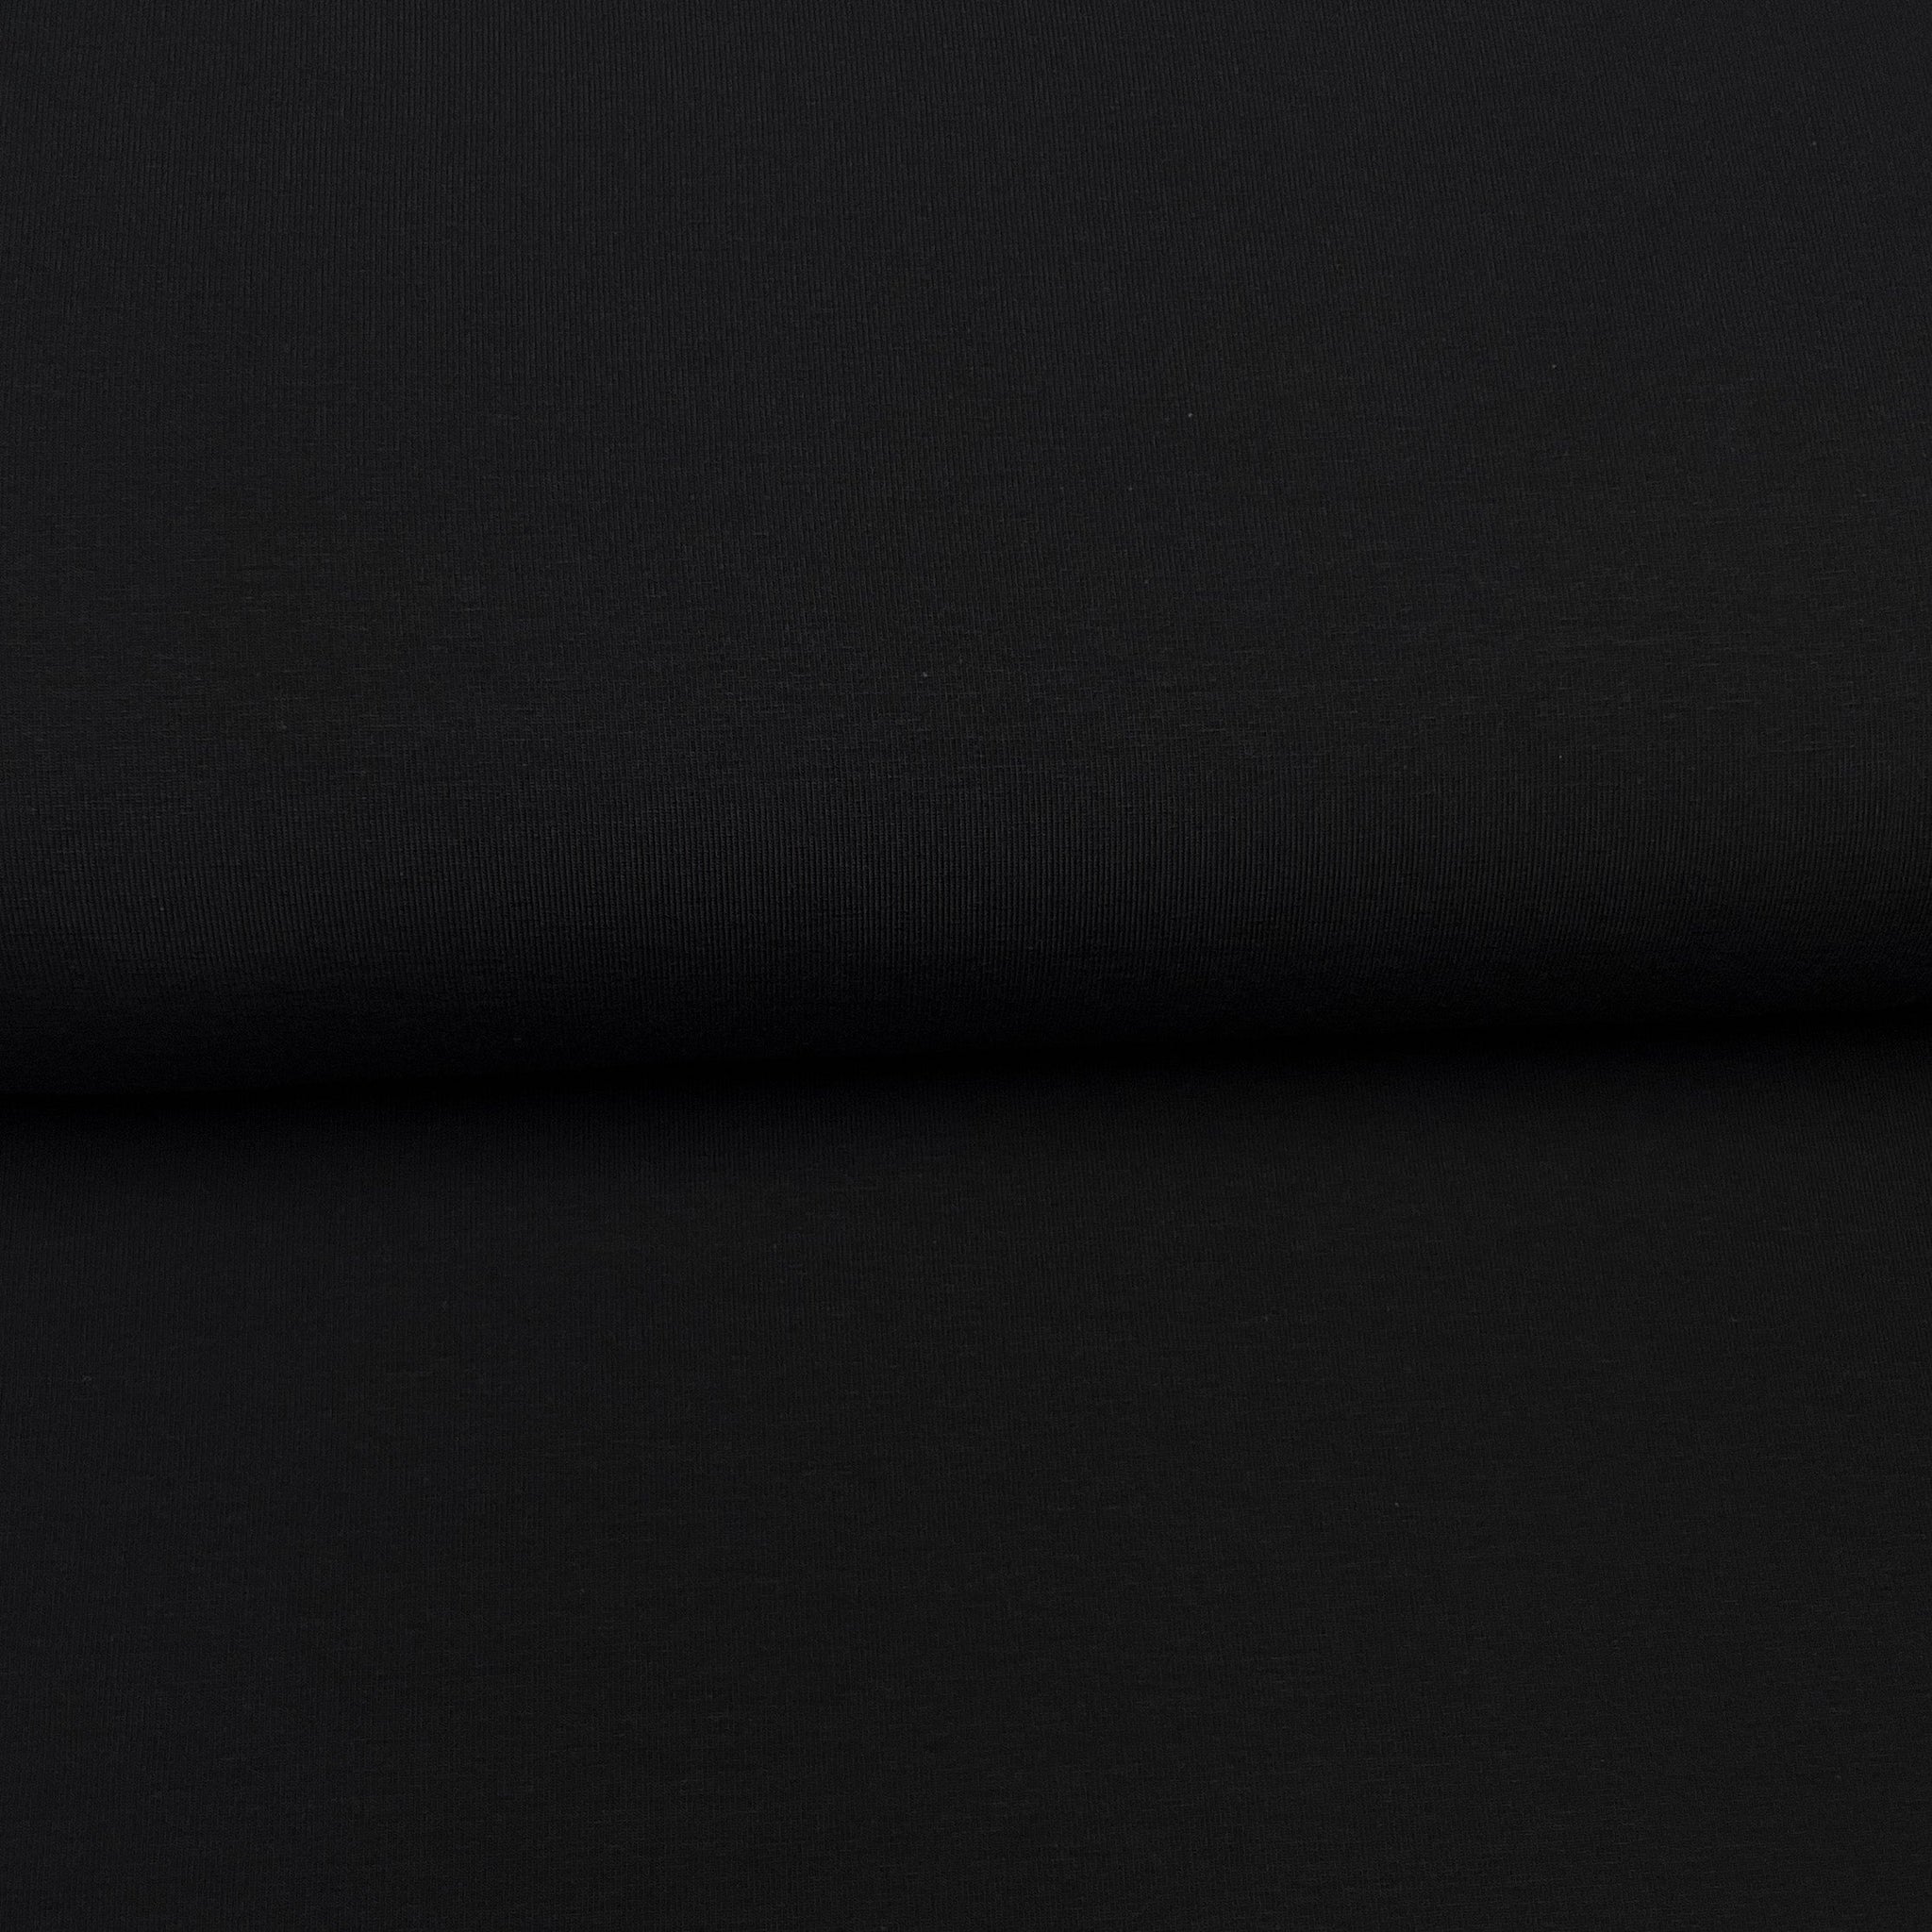 Fin de rouleau 18 cm - Noir - Jersey uni